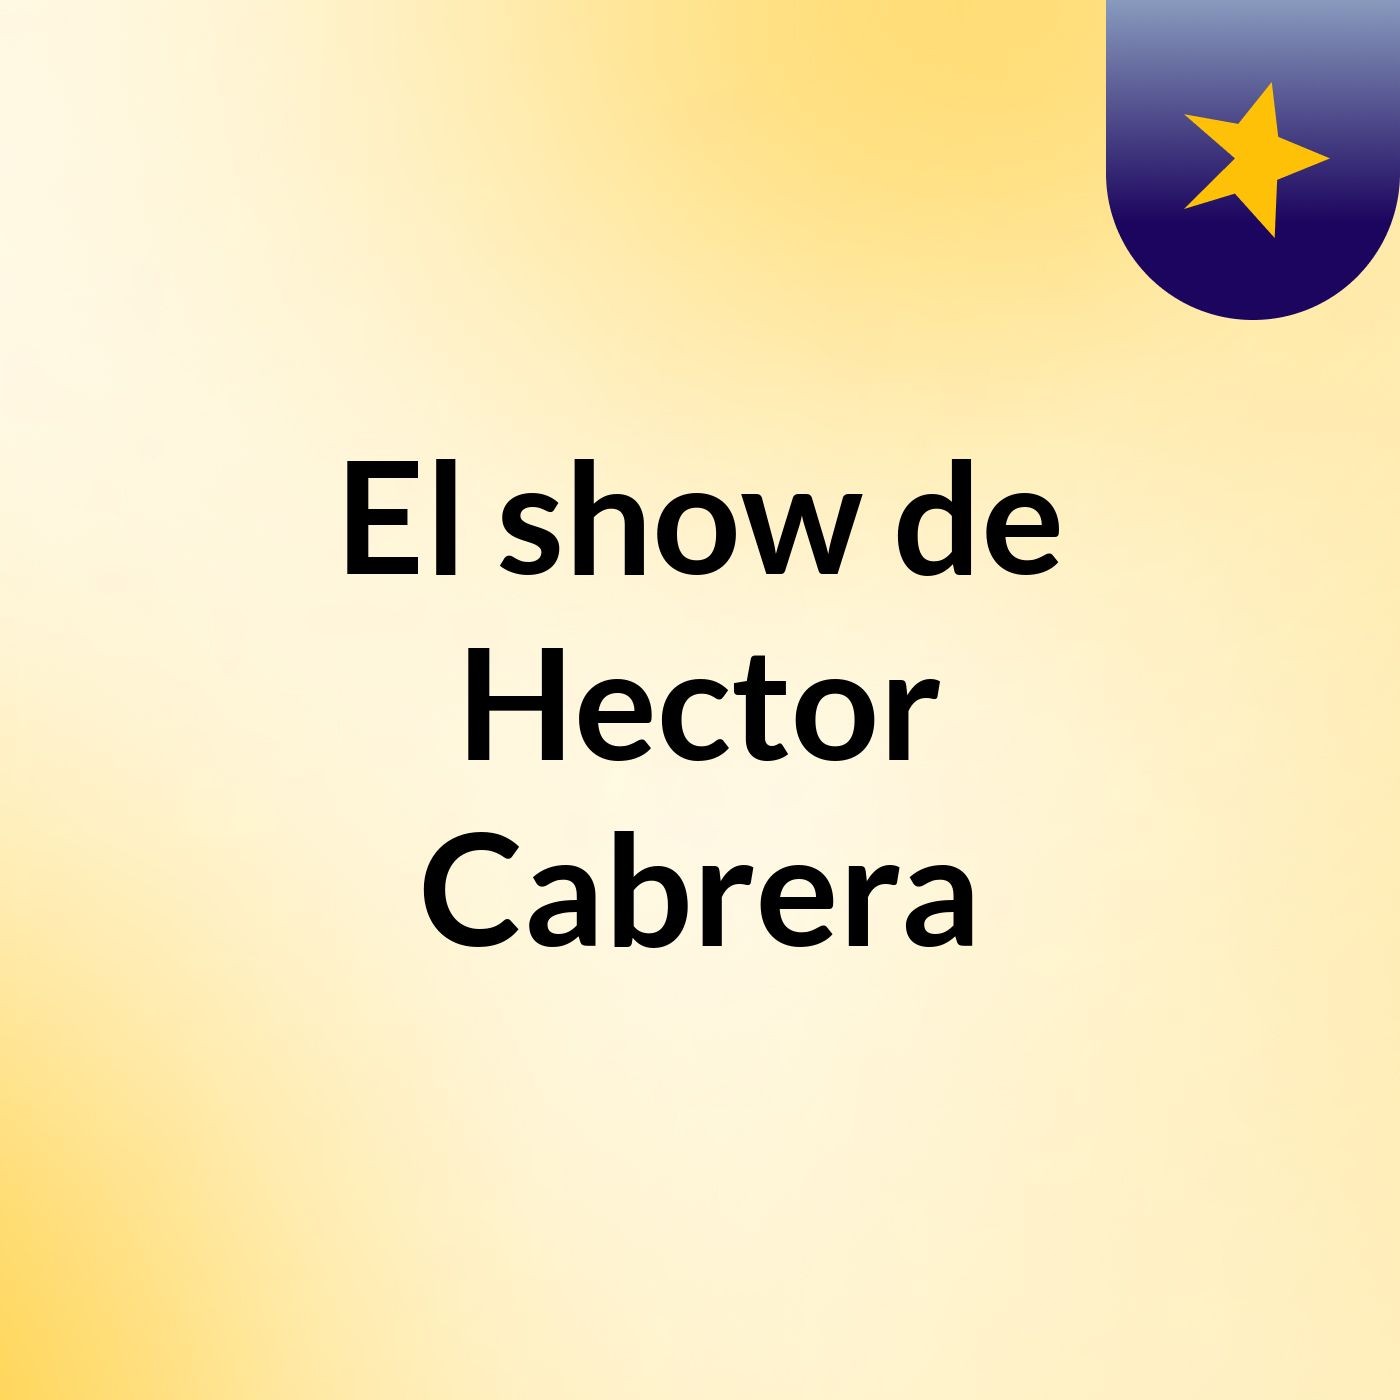 El show de Hector Cabrera